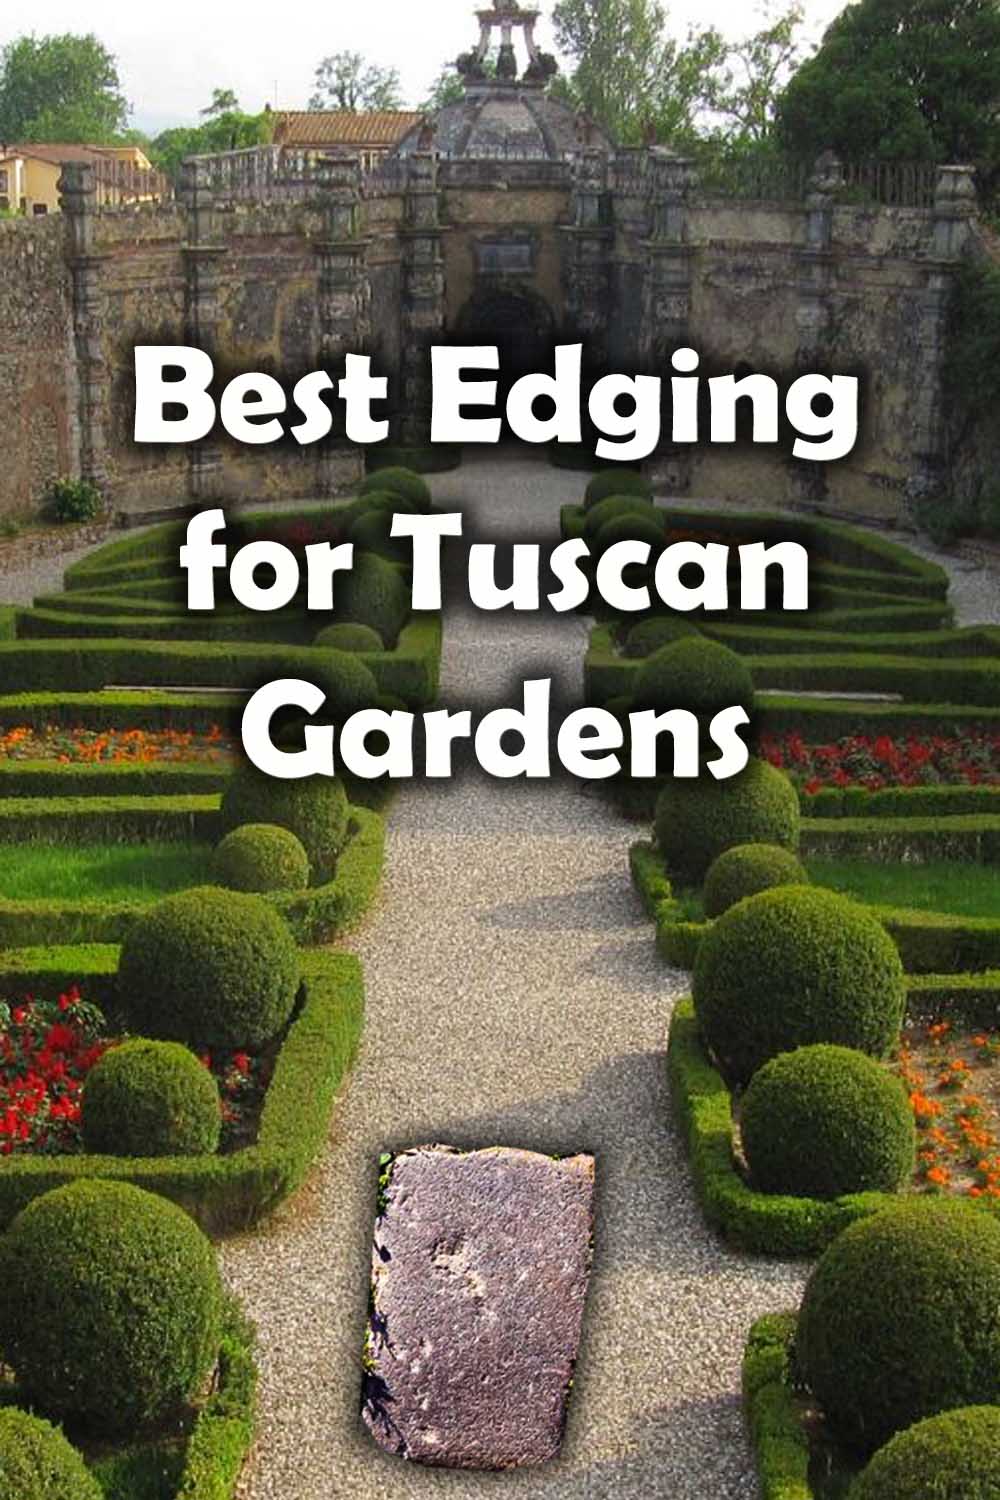 Tuscan edging 